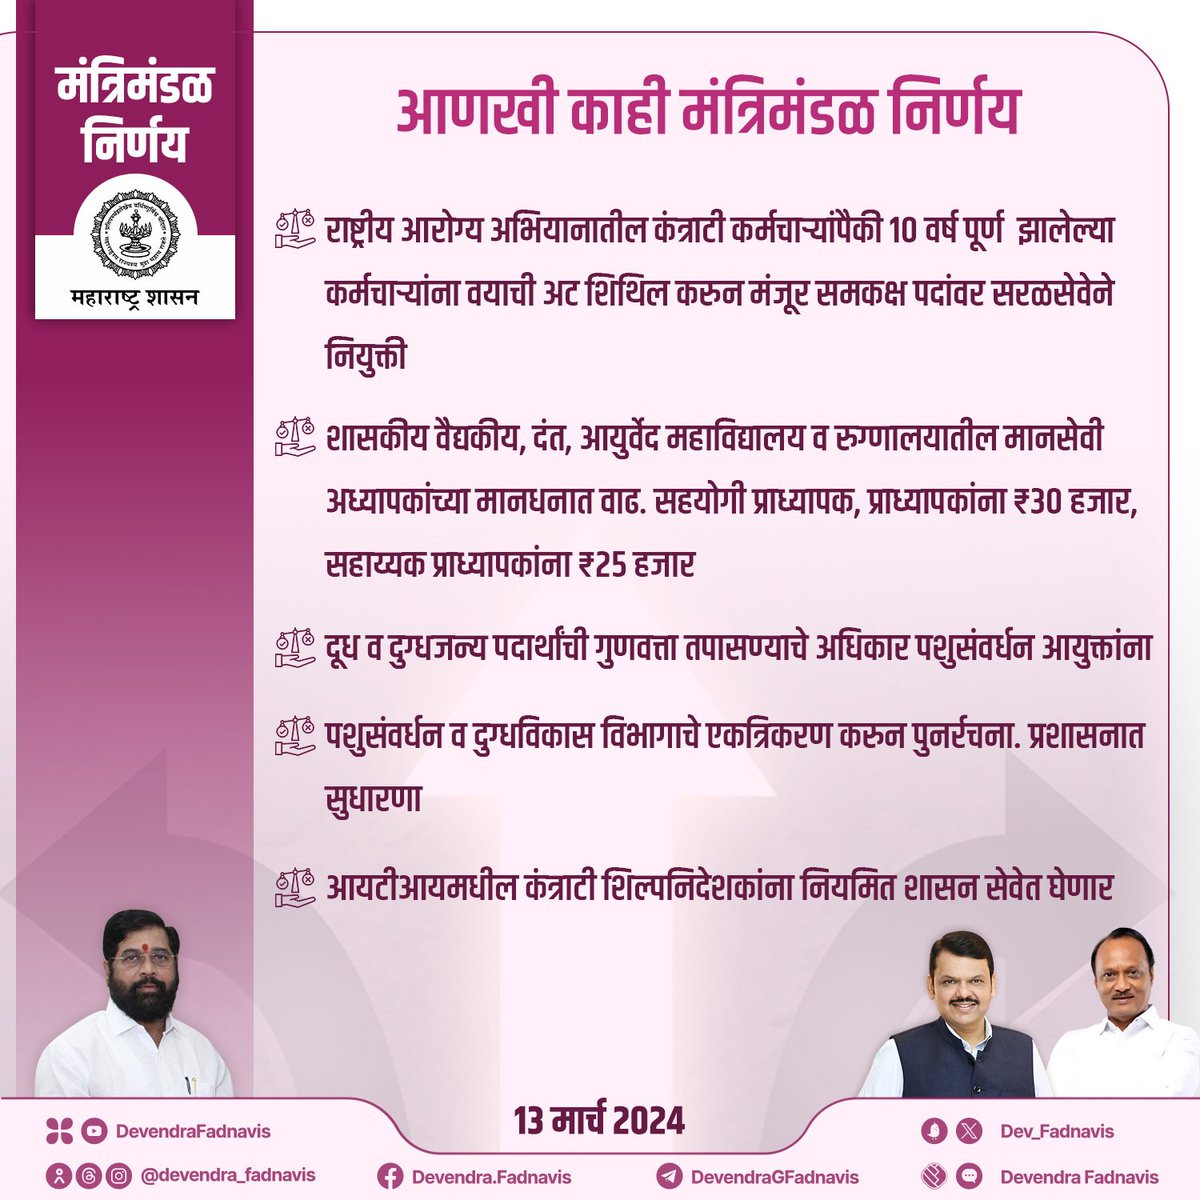 आणखी काही मंत्रिमंडळ निर्णय

#मंत्रिमंडळनिर्णय #Maharashtra #CabinetDecision #MaharashtraCabinet